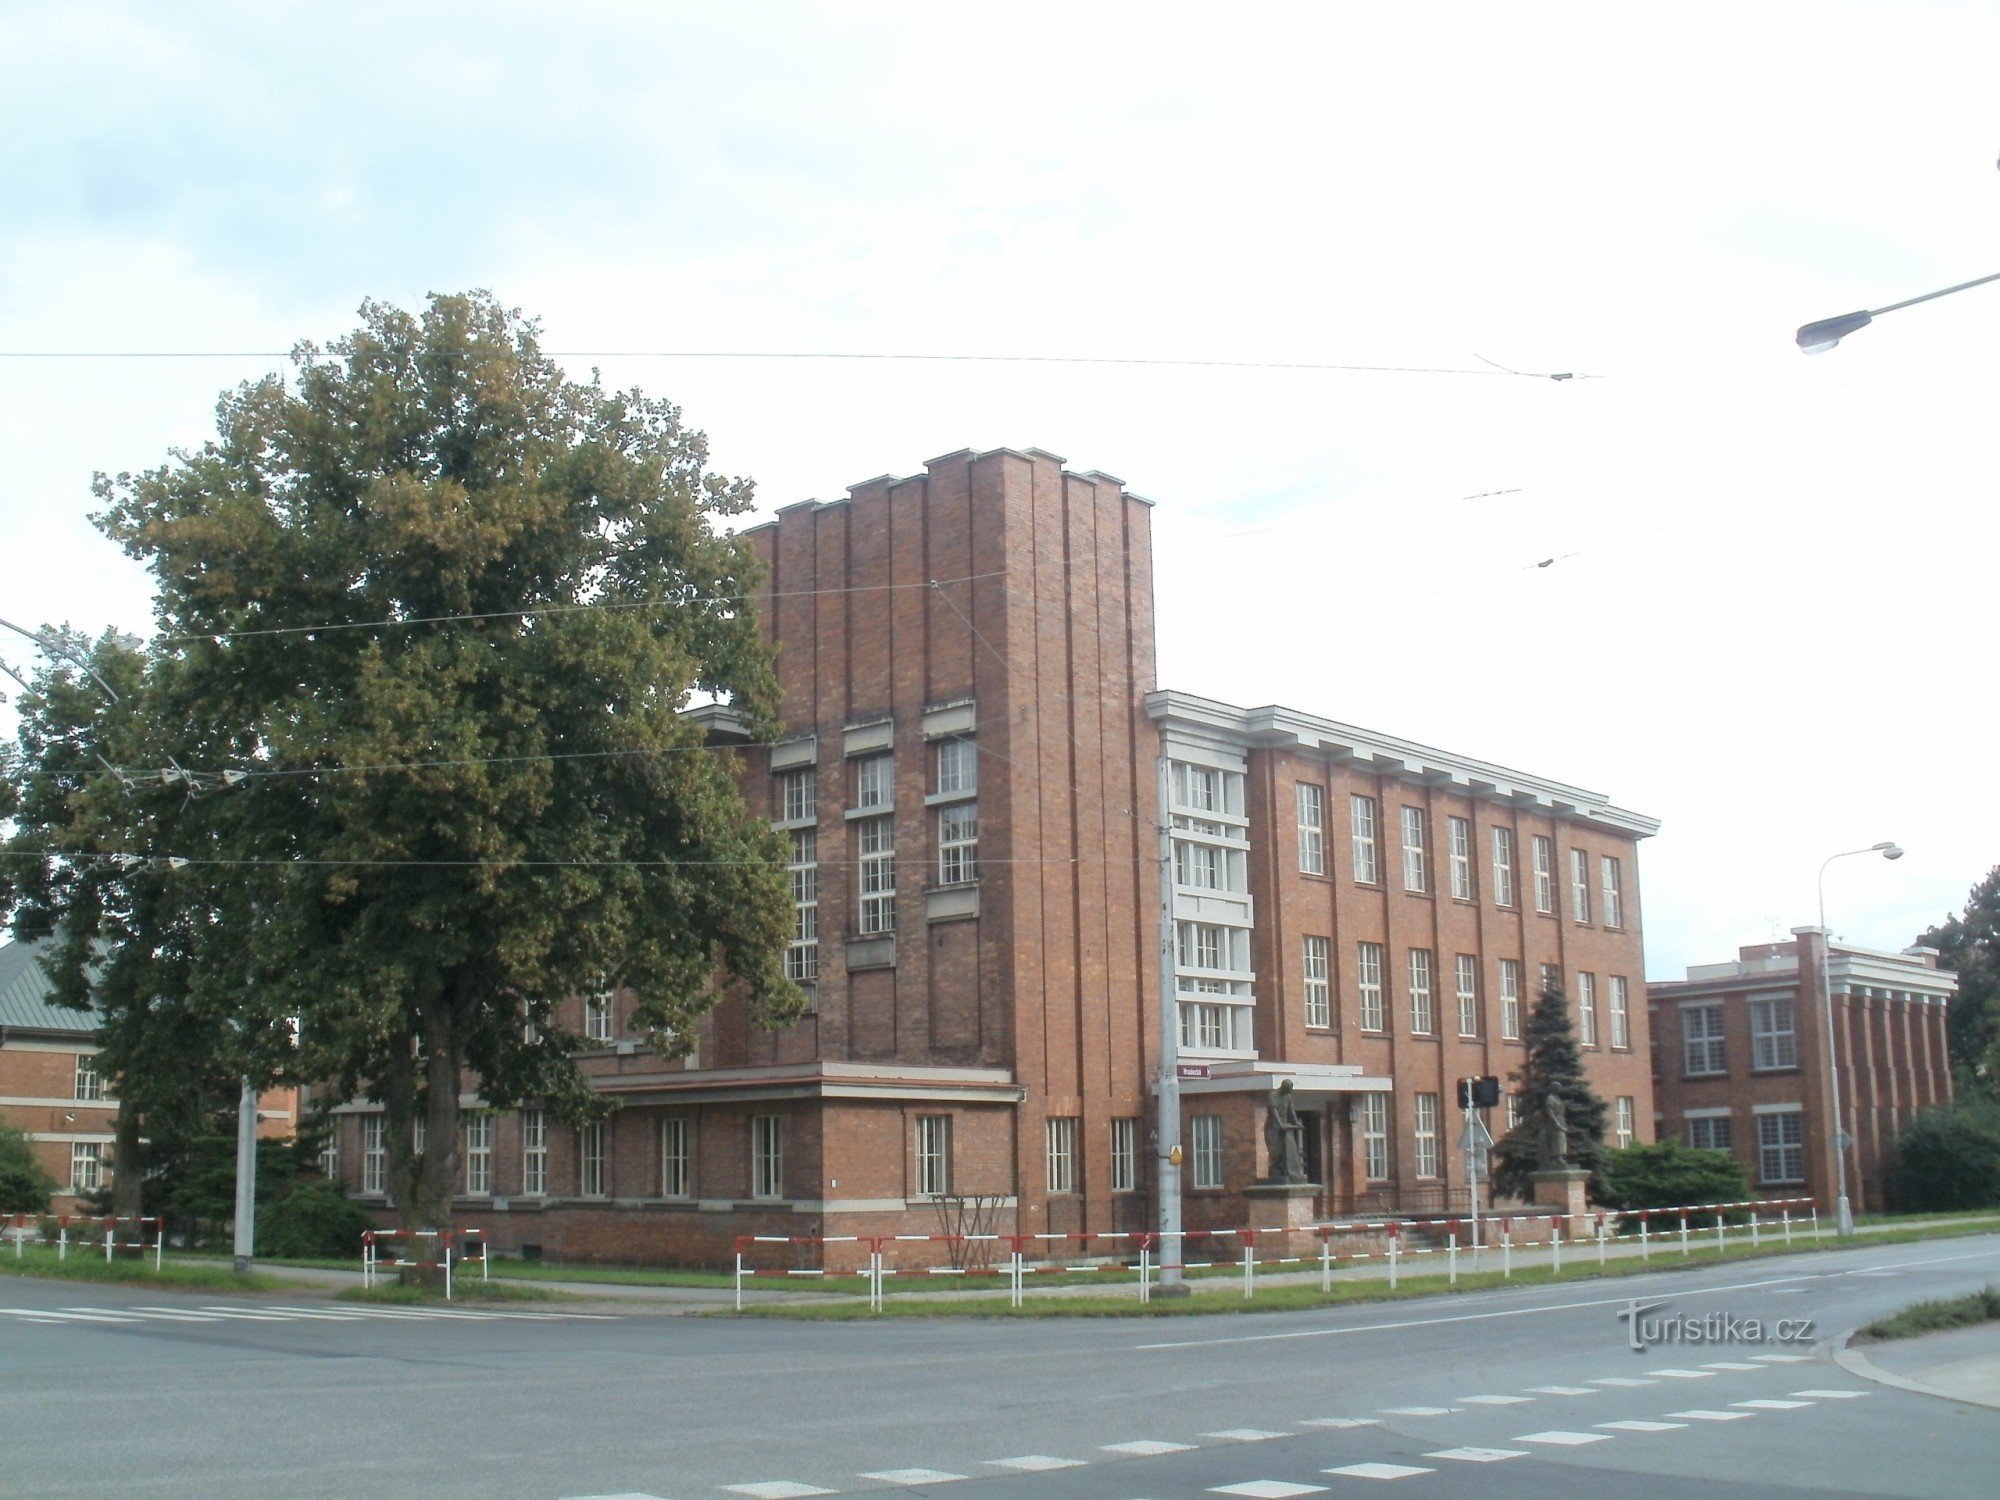 Hradec Králové - Ancienne école Koželuž de Gočár